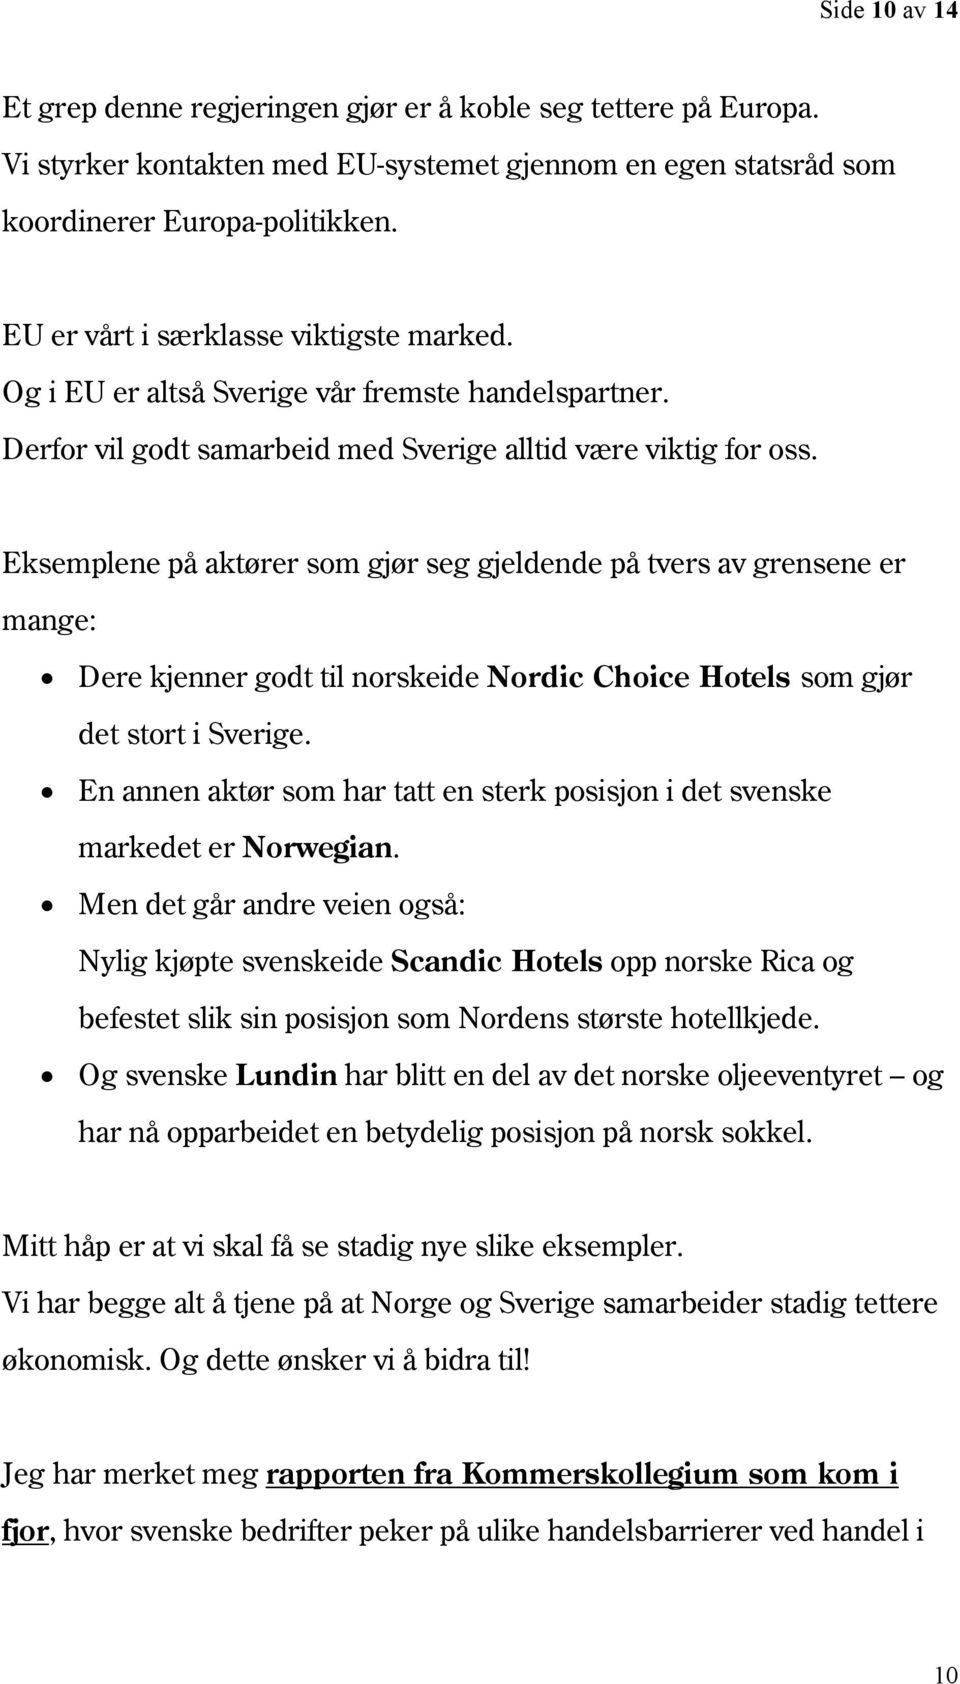 Eksemplene på aktører som gjør seg gjeldende på tvers av grensene er mange: Dere kjenner godt til norskeide Nordic Choice Hotels som gjør det stort i Sverige.